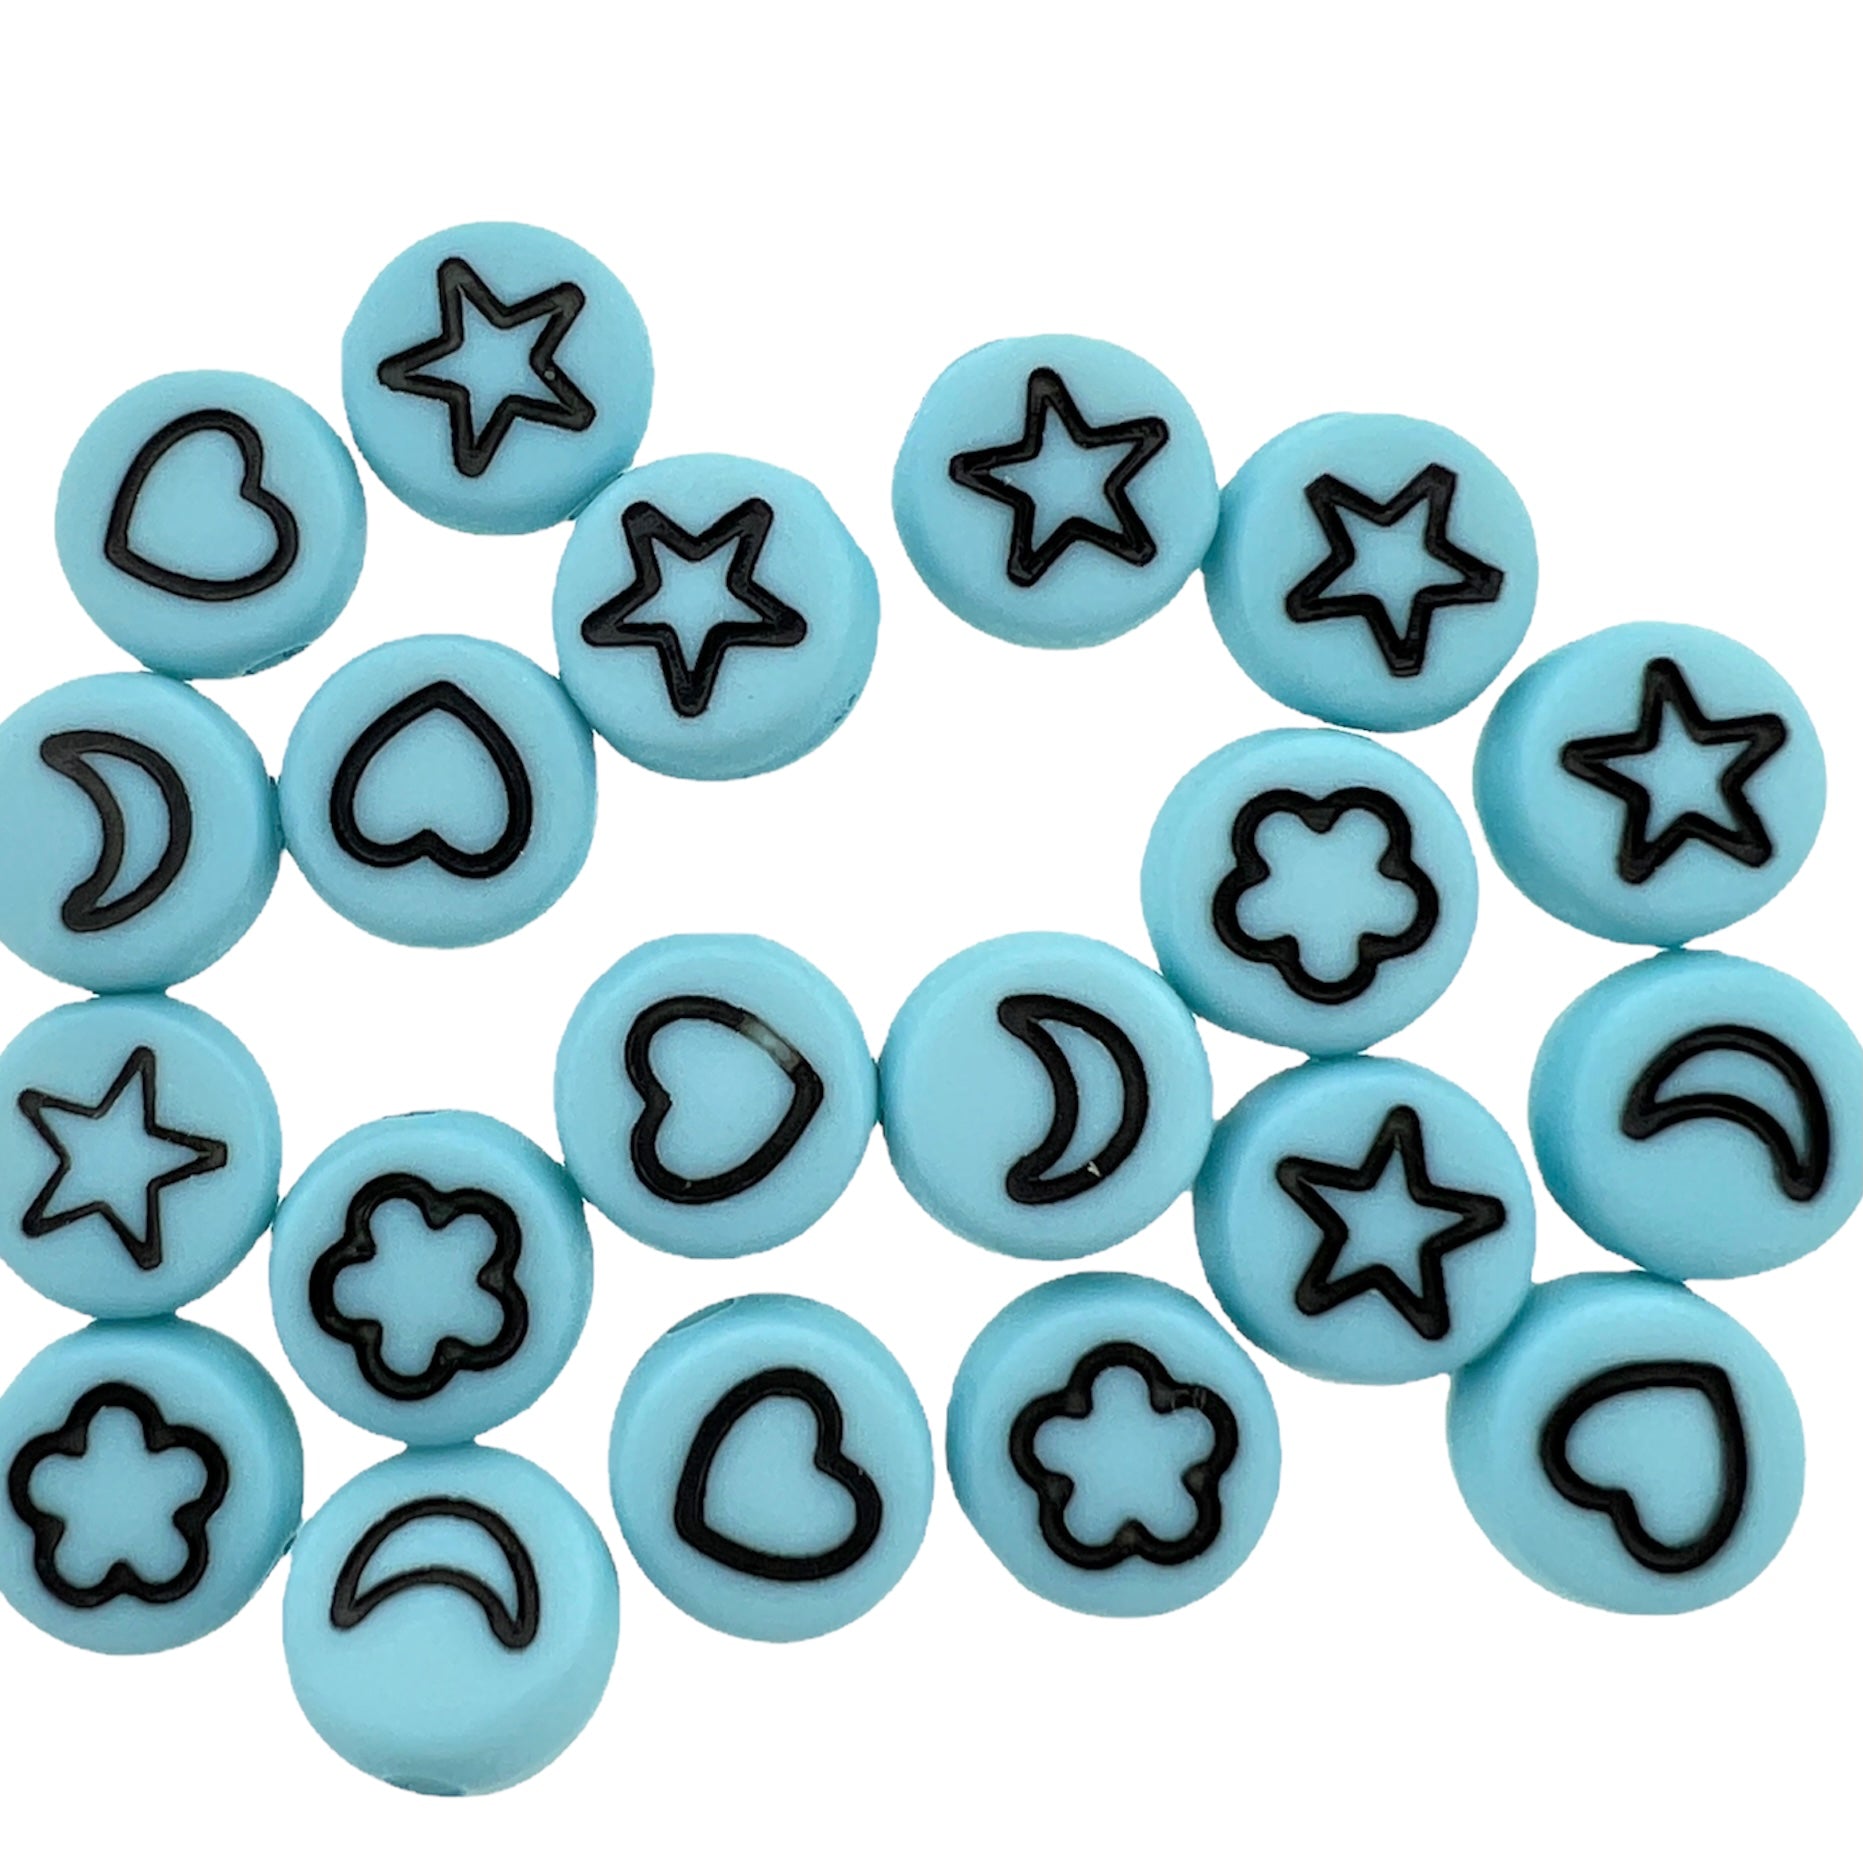 Acryl letterkralen wolk/maan/hart/ster blauw-zwart 7mm - 20 stuks-Kralen-Kraaltjes van Renate